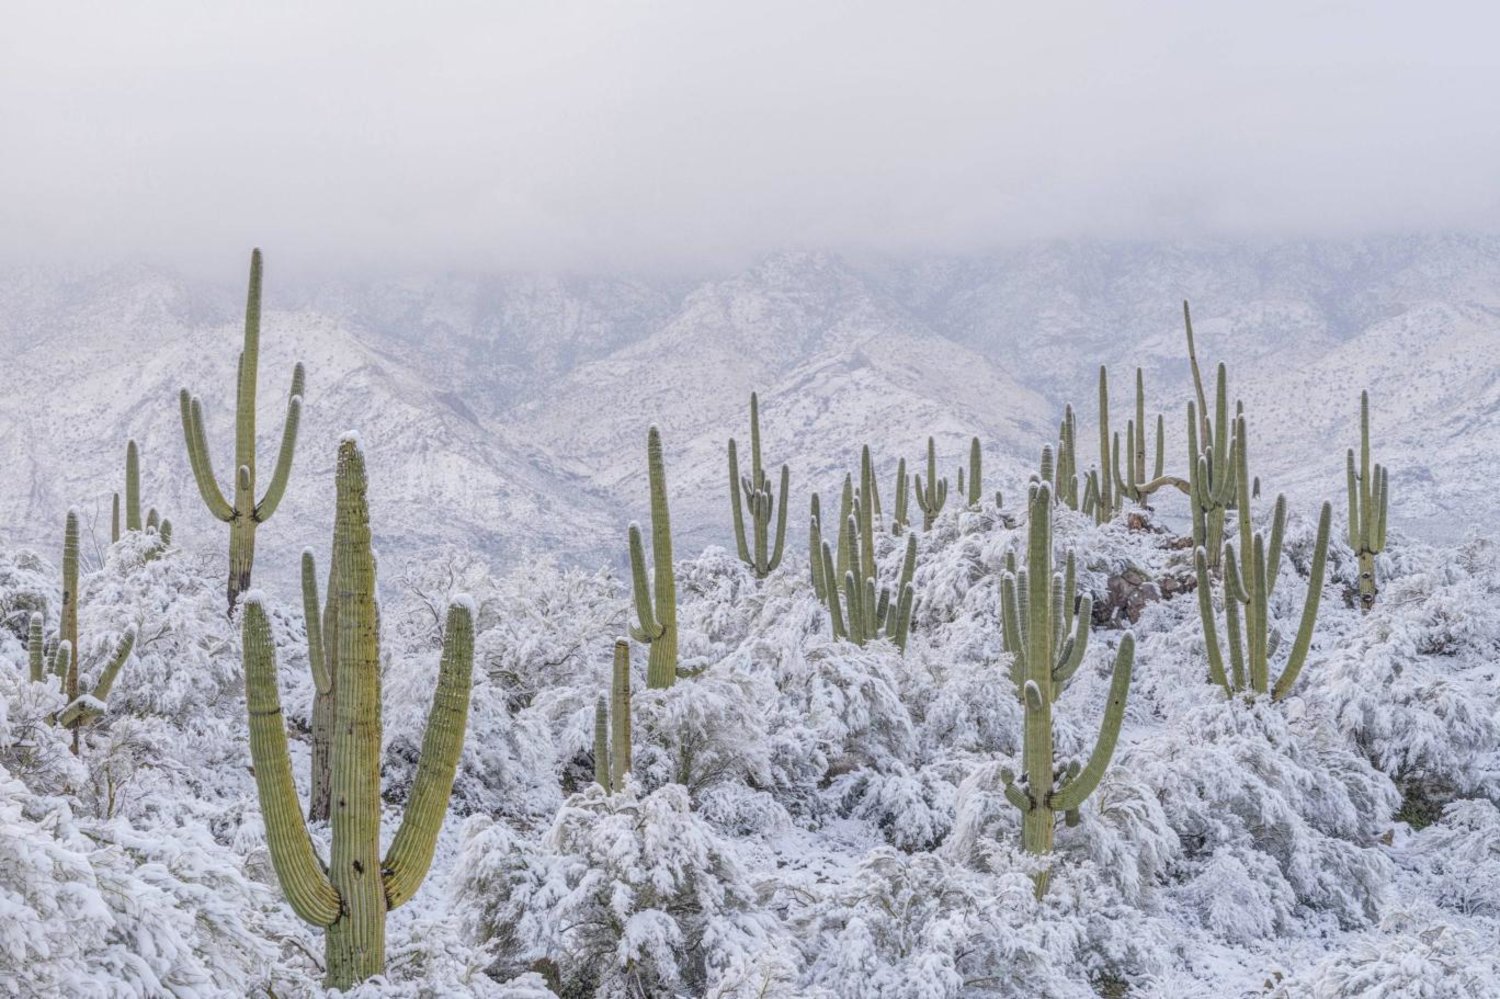 Arizona'nın Sonora Çölü'ndeki kaktüsleri çevreleyen kar (Jack Dykinga/naturepl.com)

